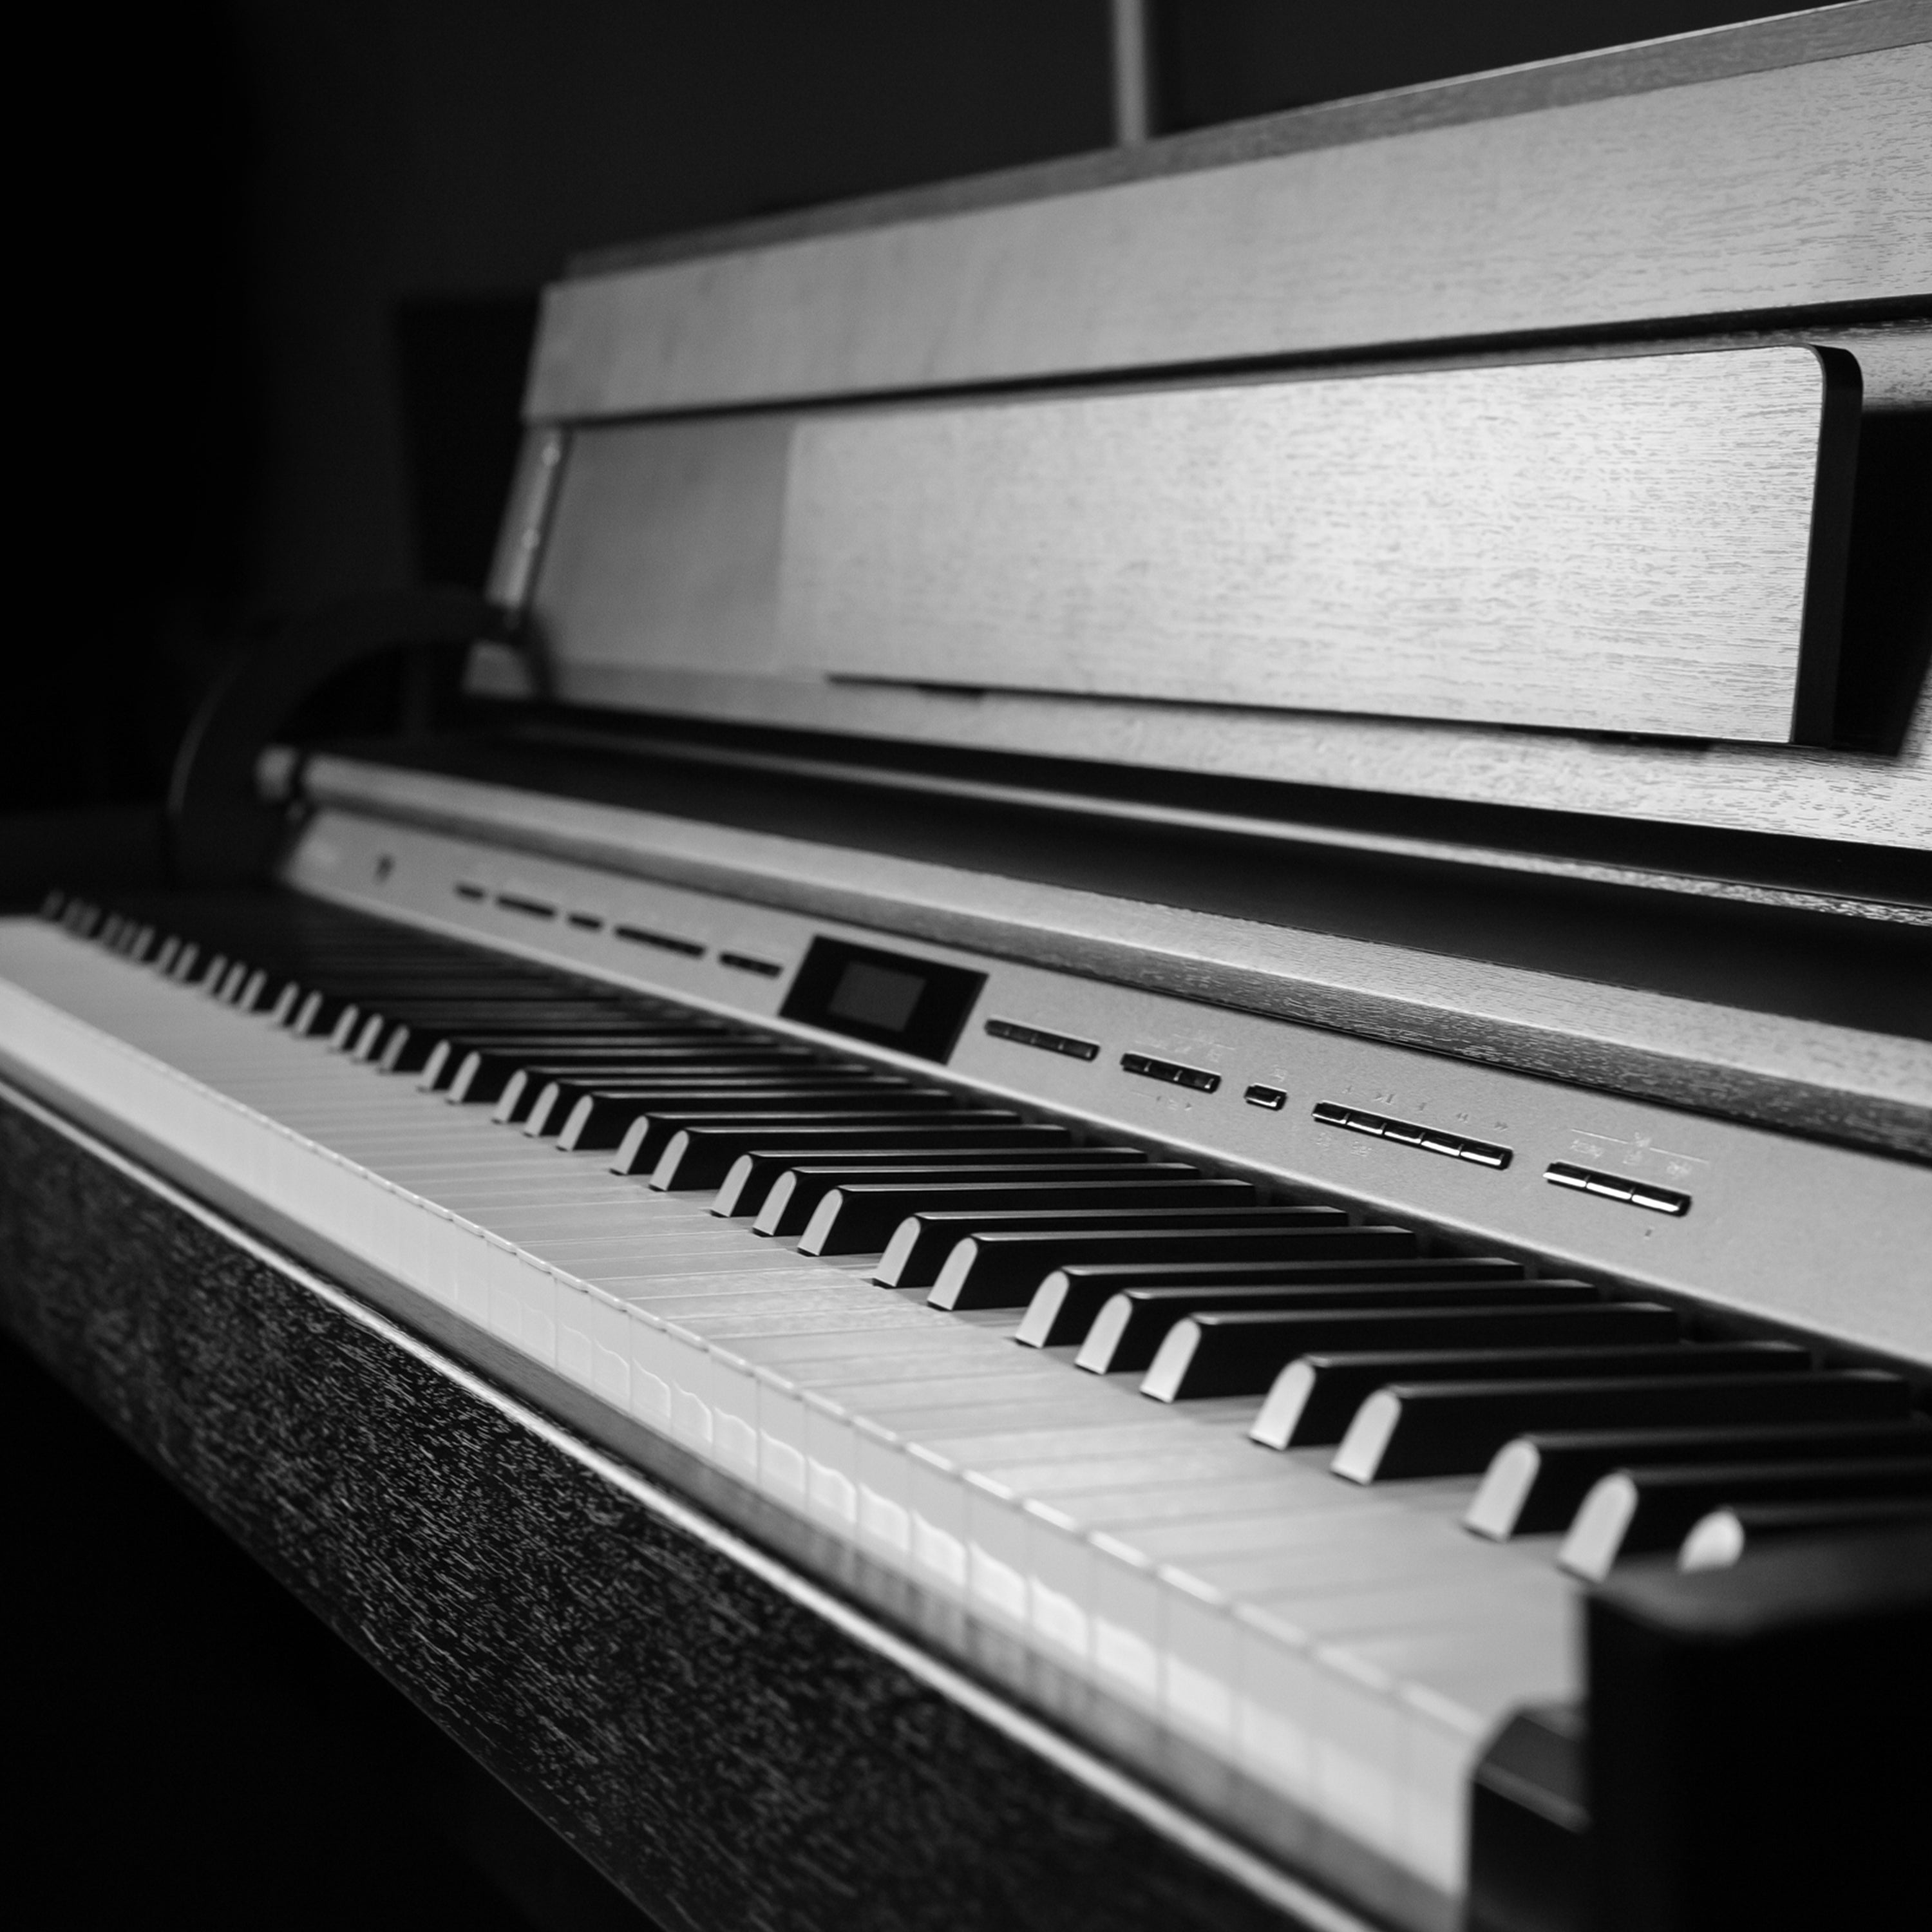 Roland DP603 Digital Piano - Contemporary Black - close-up of keys